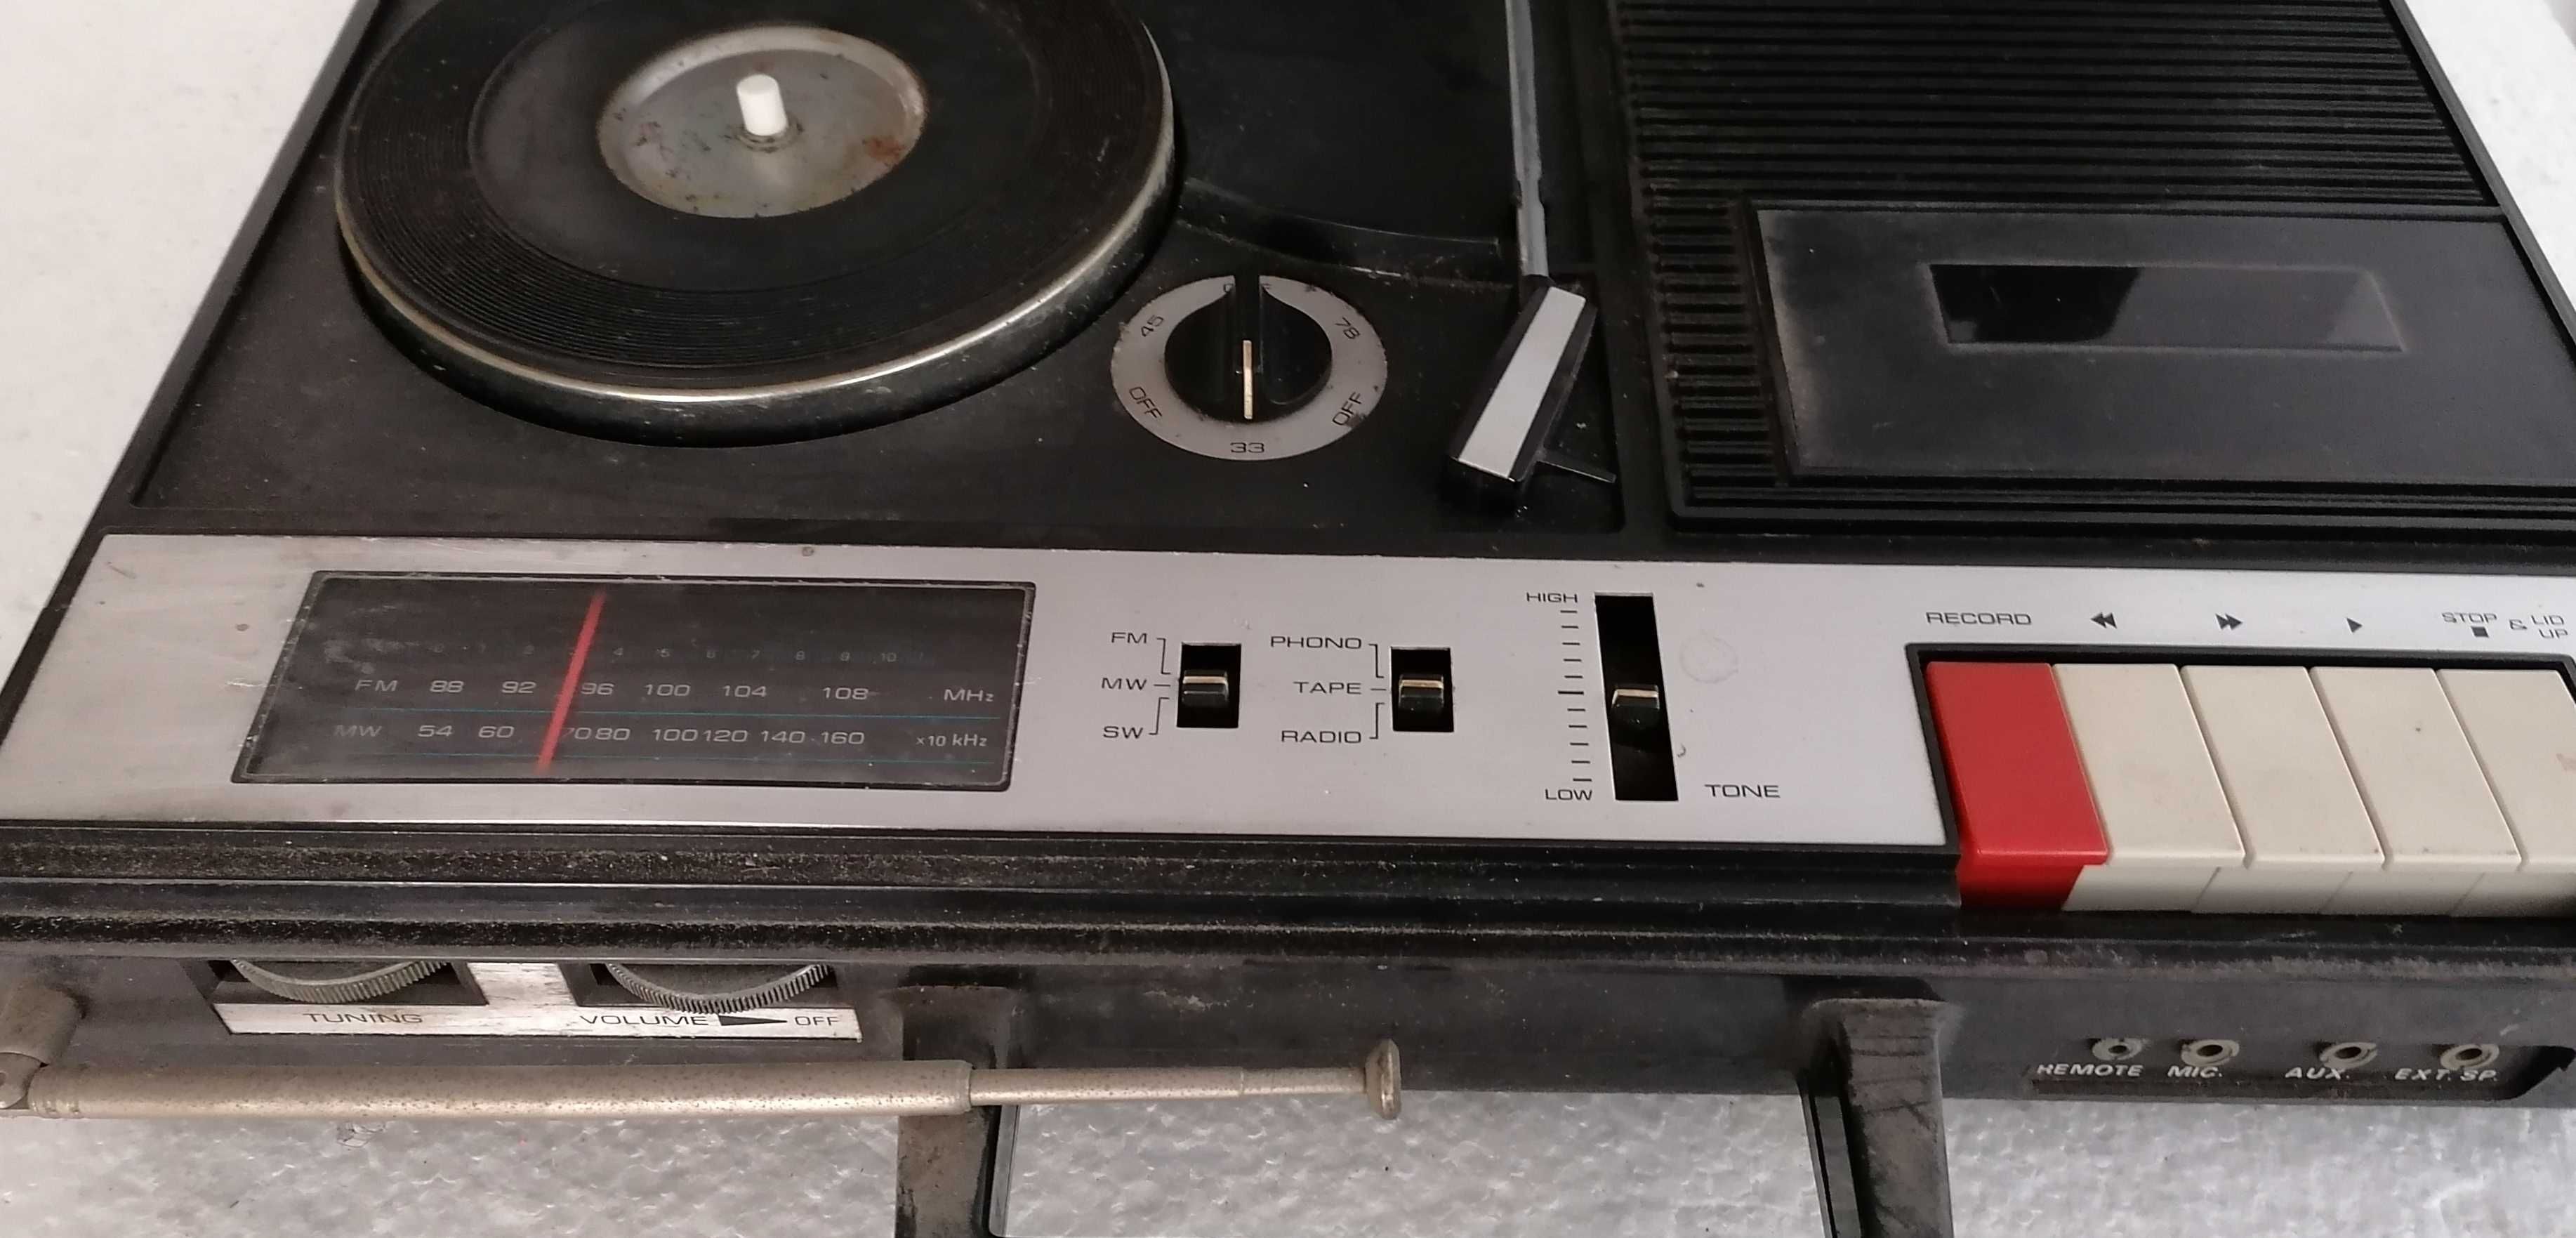 Gira-discos mala, leitor e gravador cassetes e radio, peças